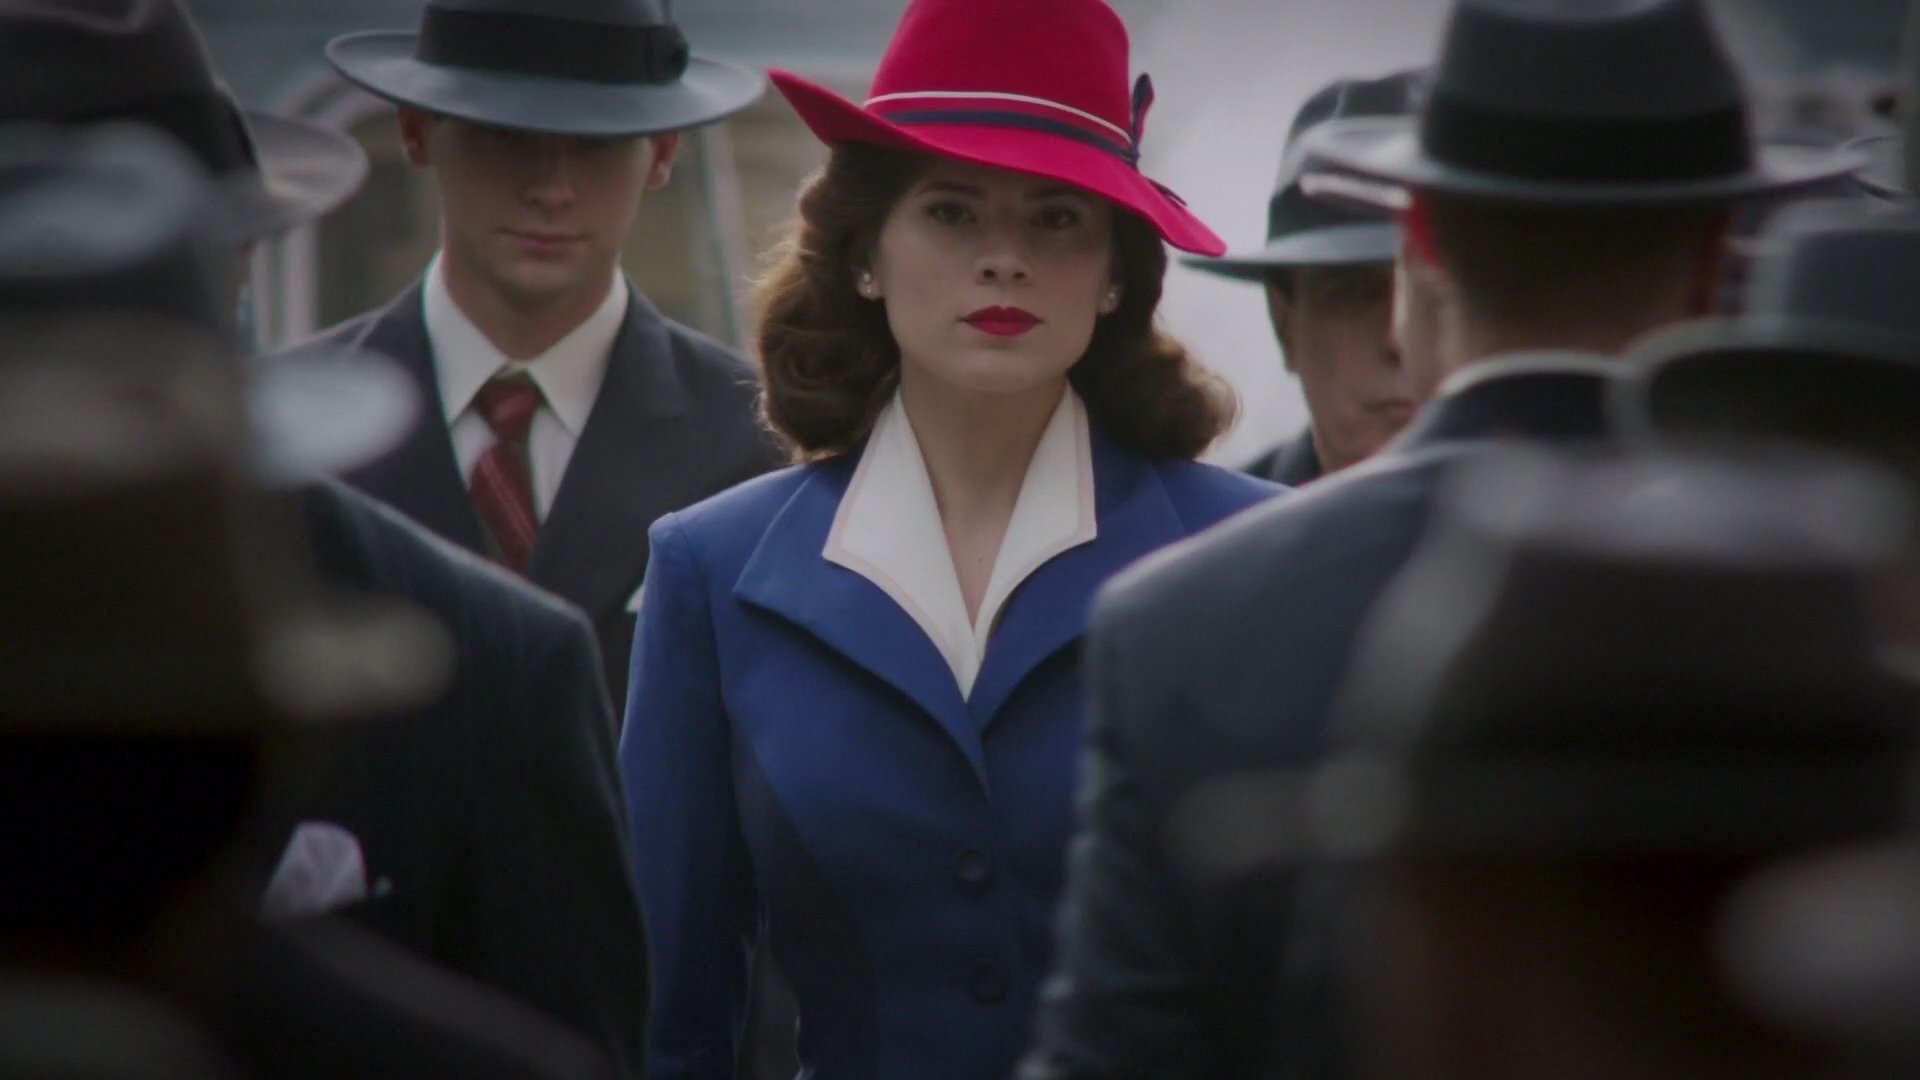 Protagonista da série andando entre multidão, com casaco azul e chapéu vermelho.